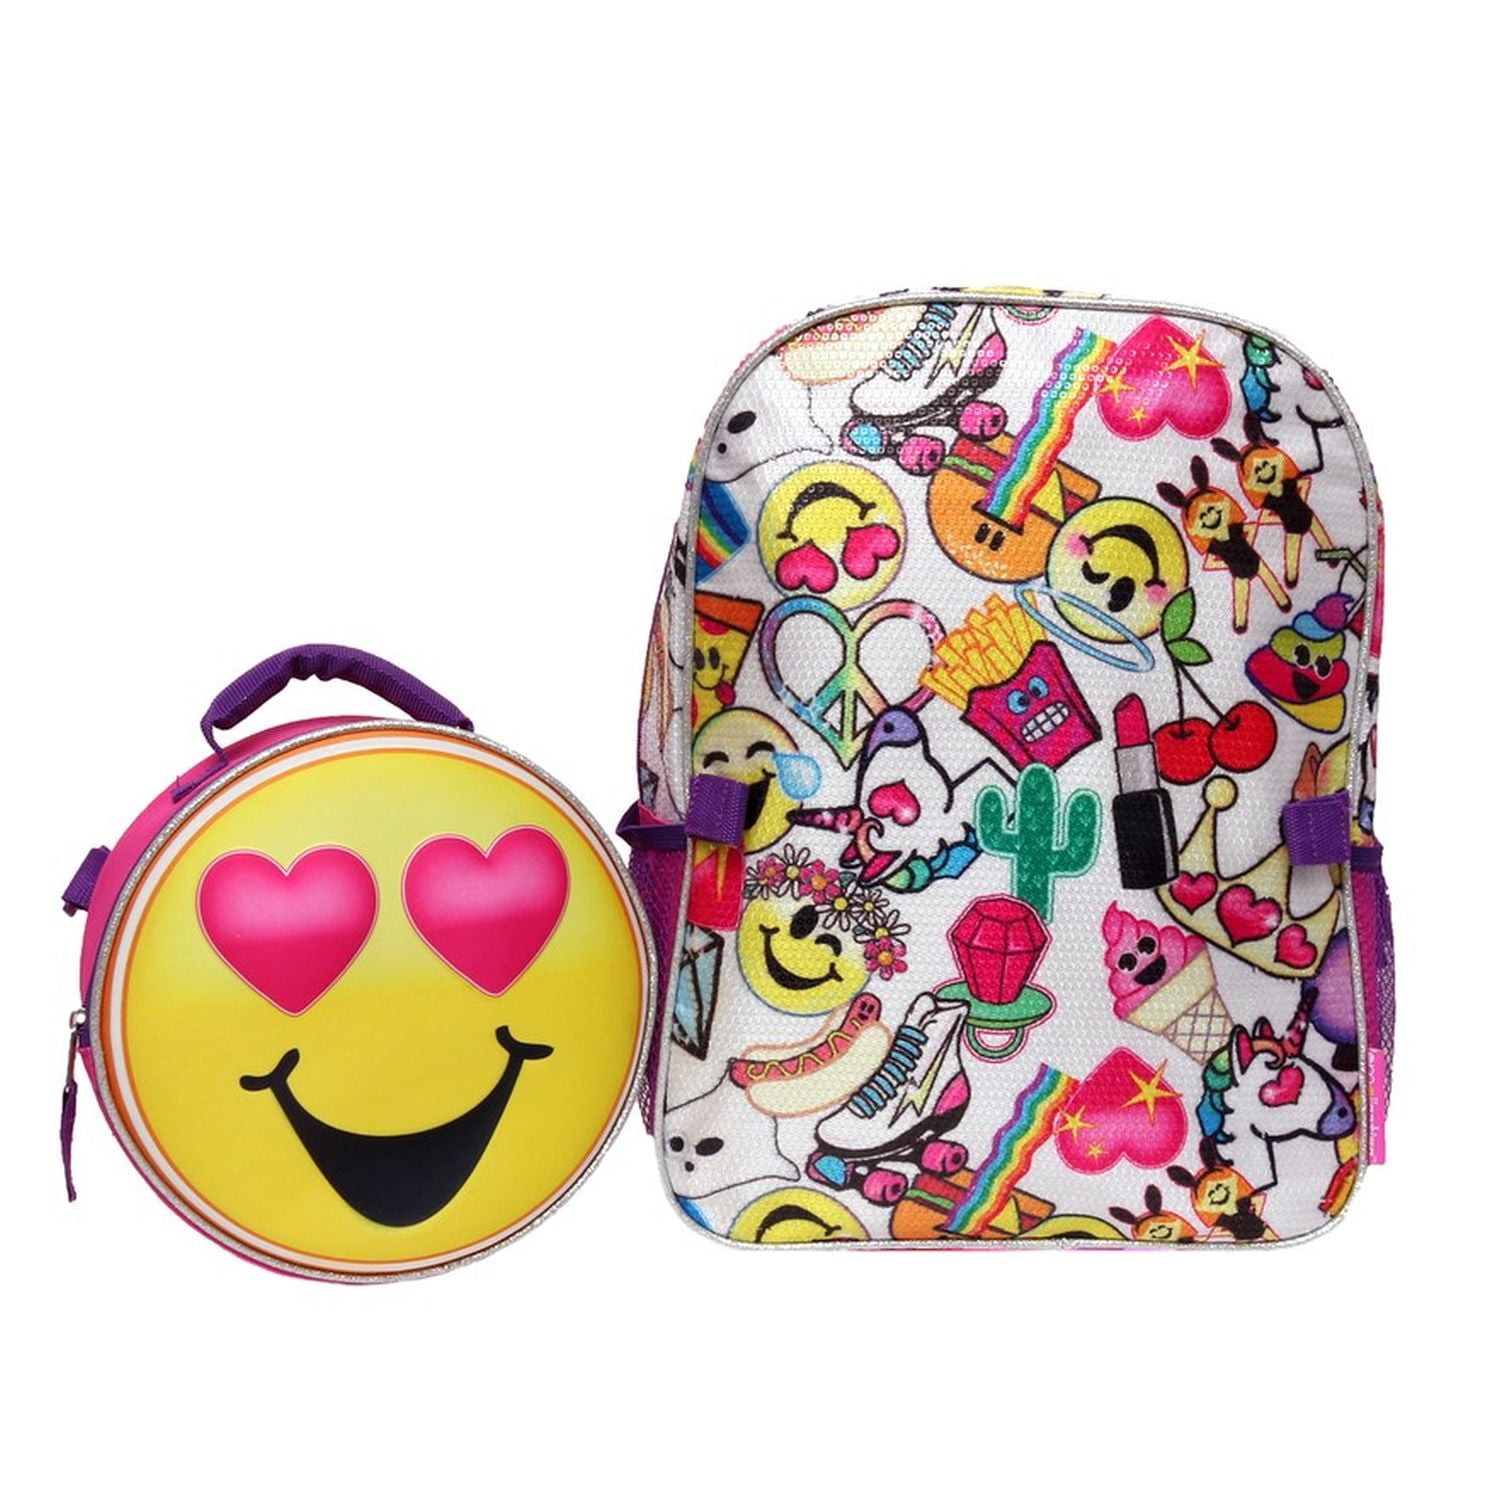 Set 6 Cute Emoji Smiling Face With Heart Eyes Waterproof Backpack Beach Bag 